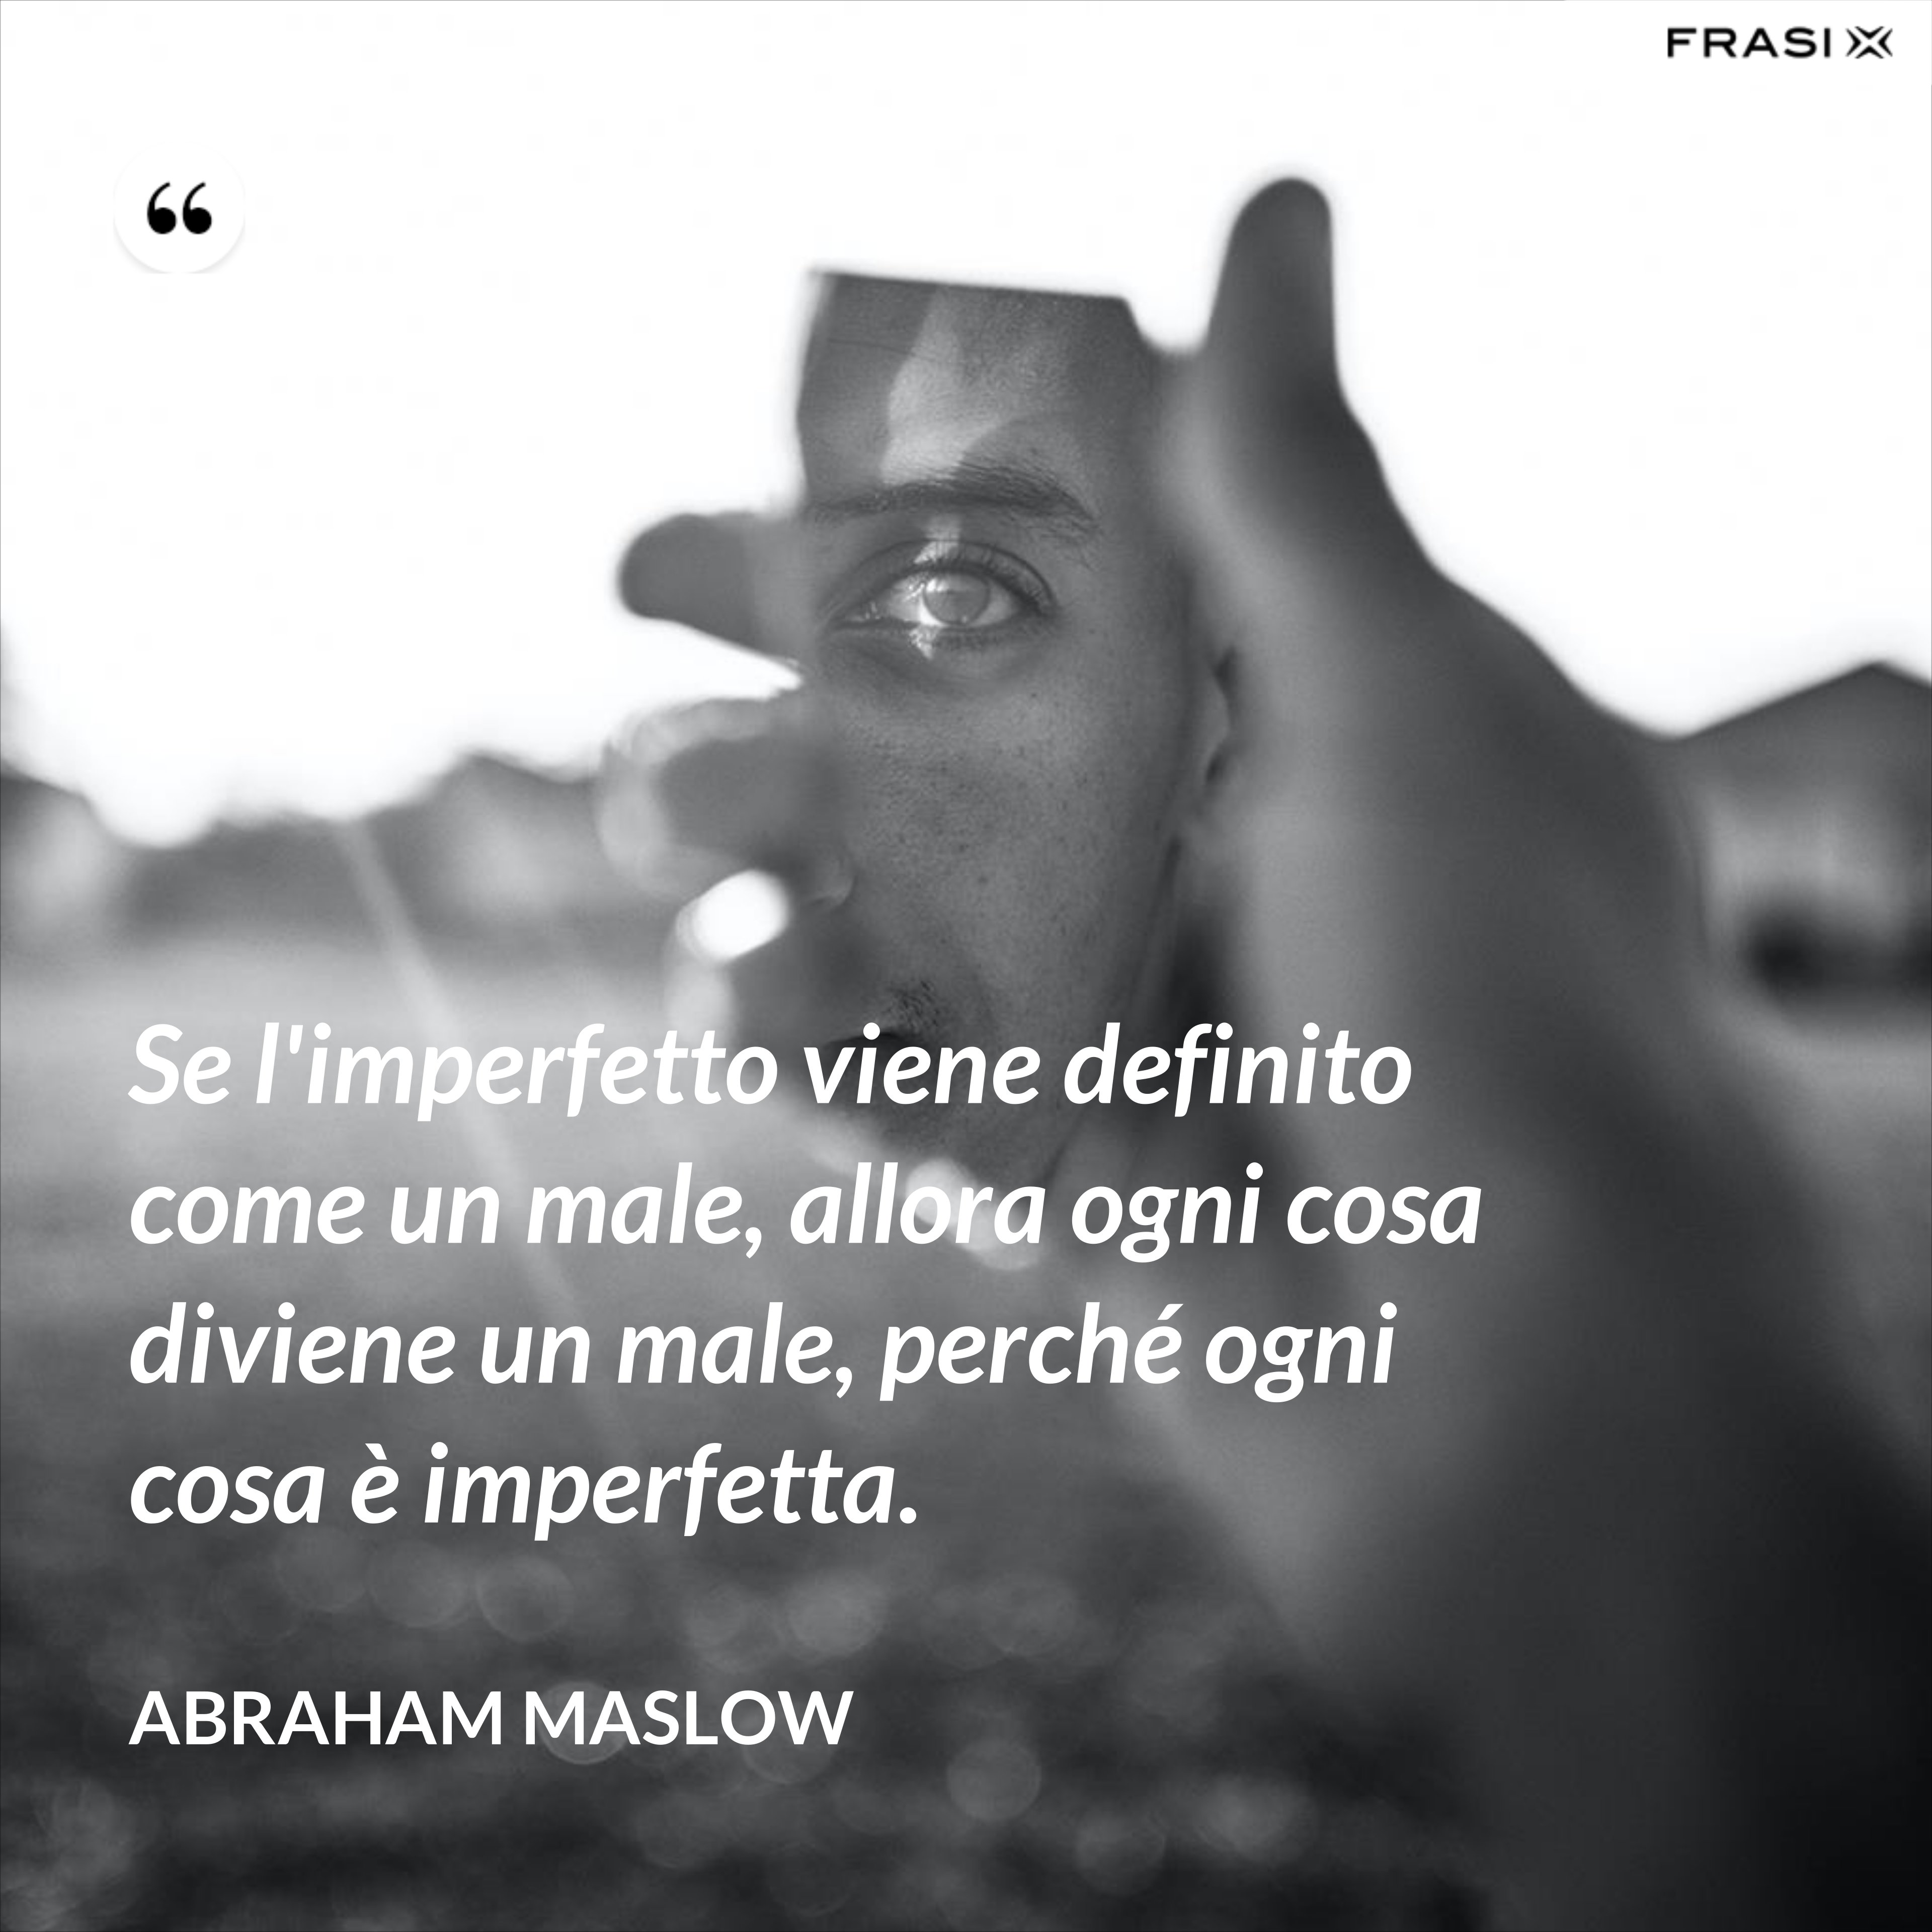 Se l'imperfetto viene definito come un male, allora ogni cosa diviene un male, perché ogni cosa è imperfetta. - Abraham Maslow